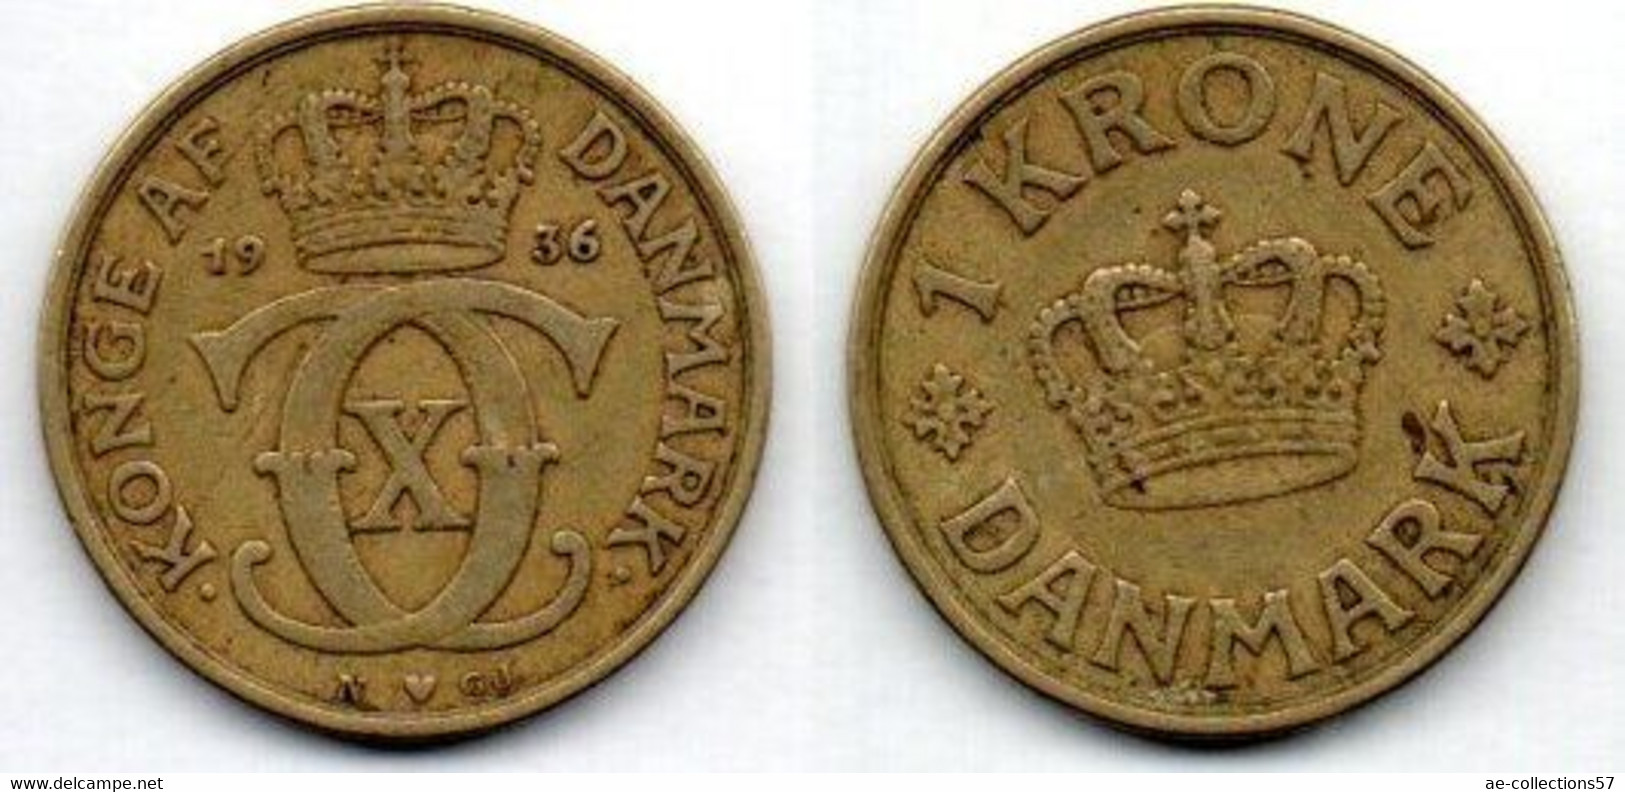 MA 18488 /  Danemark - Denmark - Dänemark 1 Krone 1936 NGJ TB+ - Danimarca